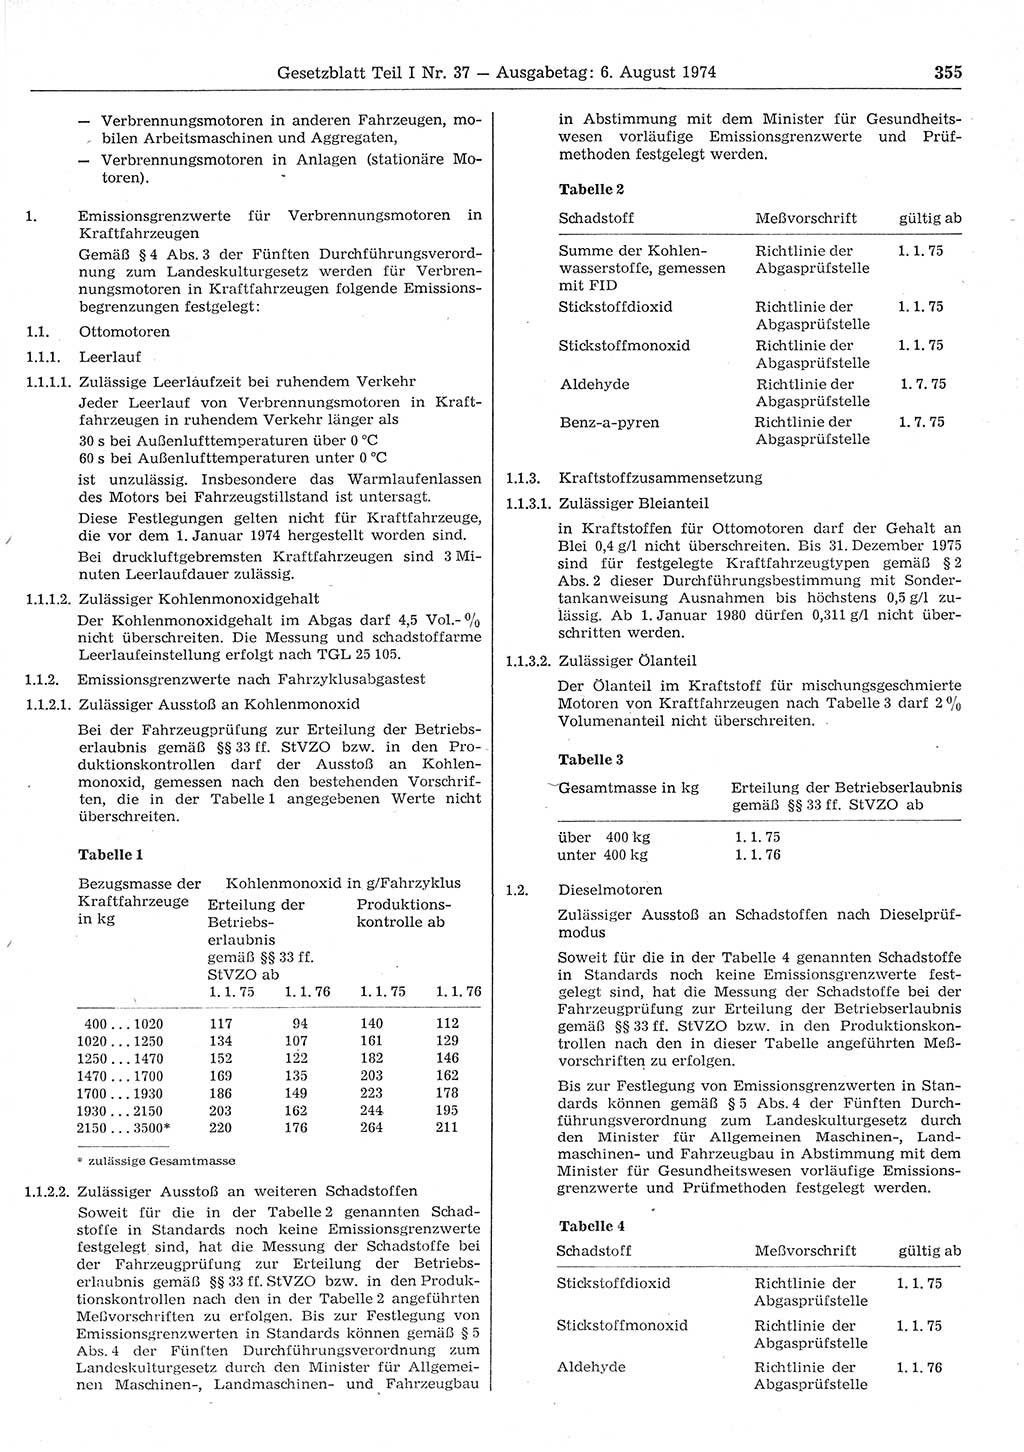 Gesetzblatt (GBl.) der Deutschen Demokratischen Republik (DDR) Teil Ⅰ 1974, Seite 355 (GBl. DDR Ⅰ 1974, S. 355)